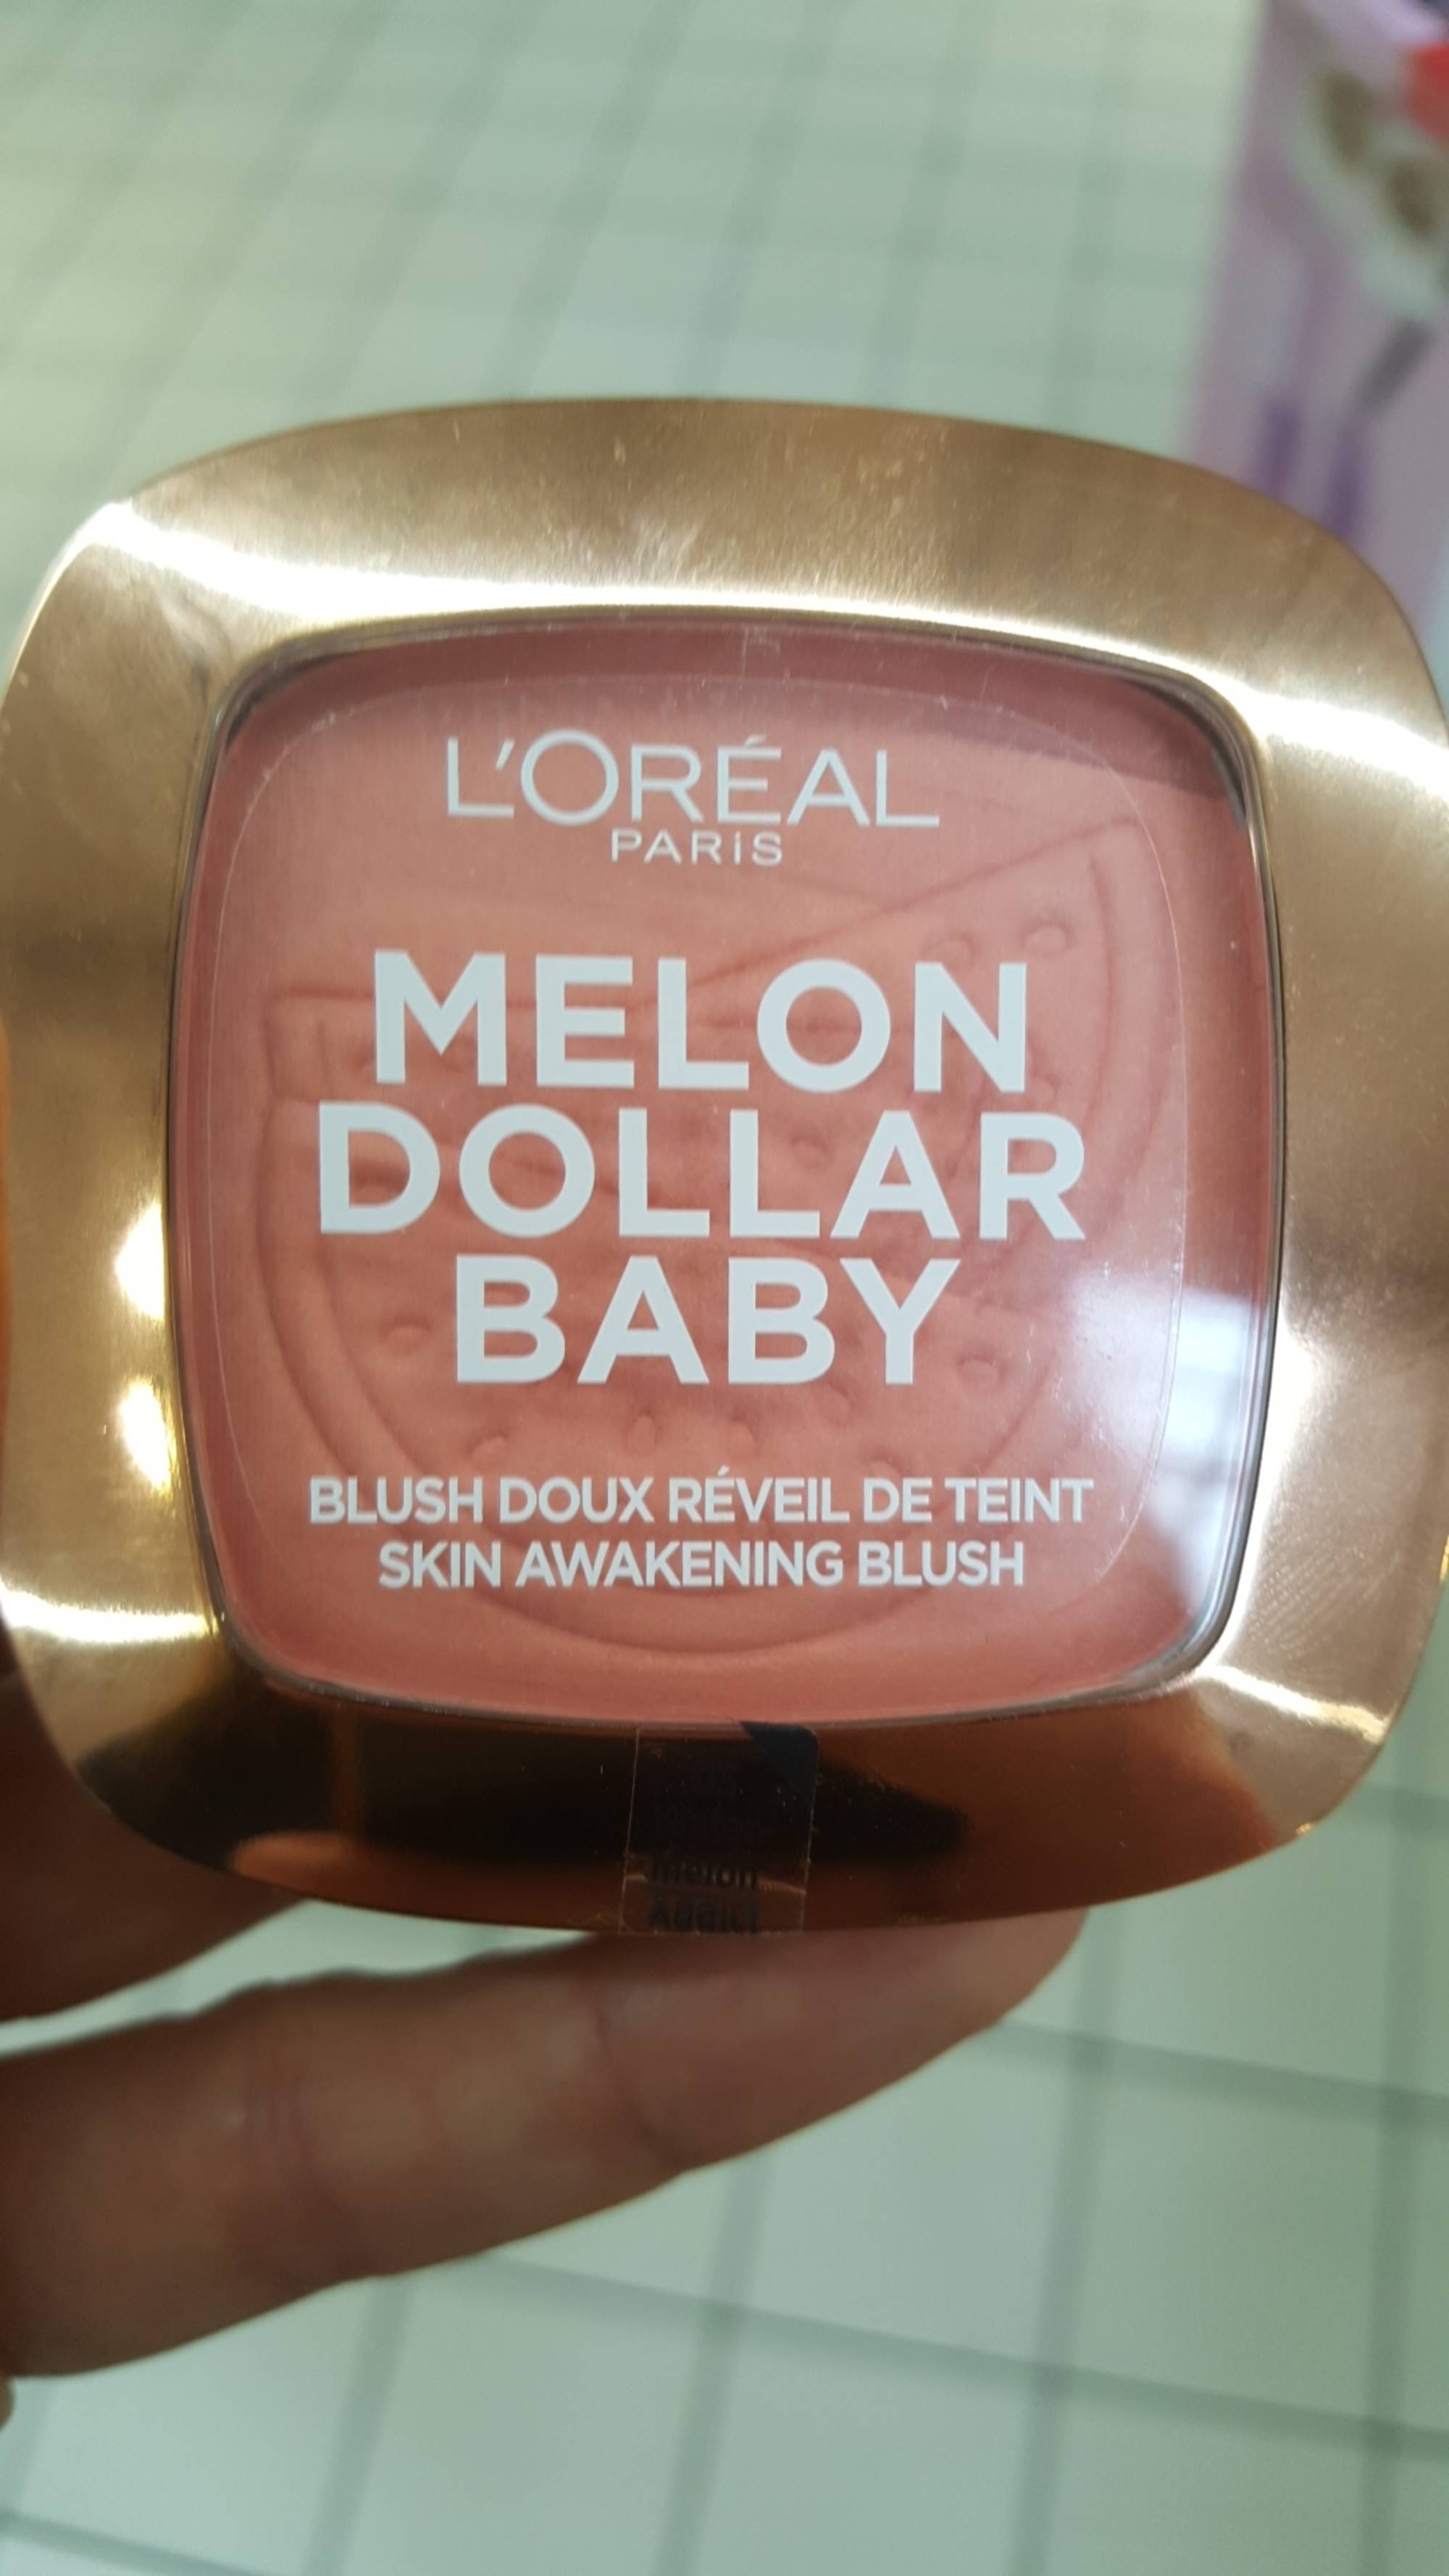 L'ORÉAL PARIS - Melon dollar baby - Blush doux réveil de teint